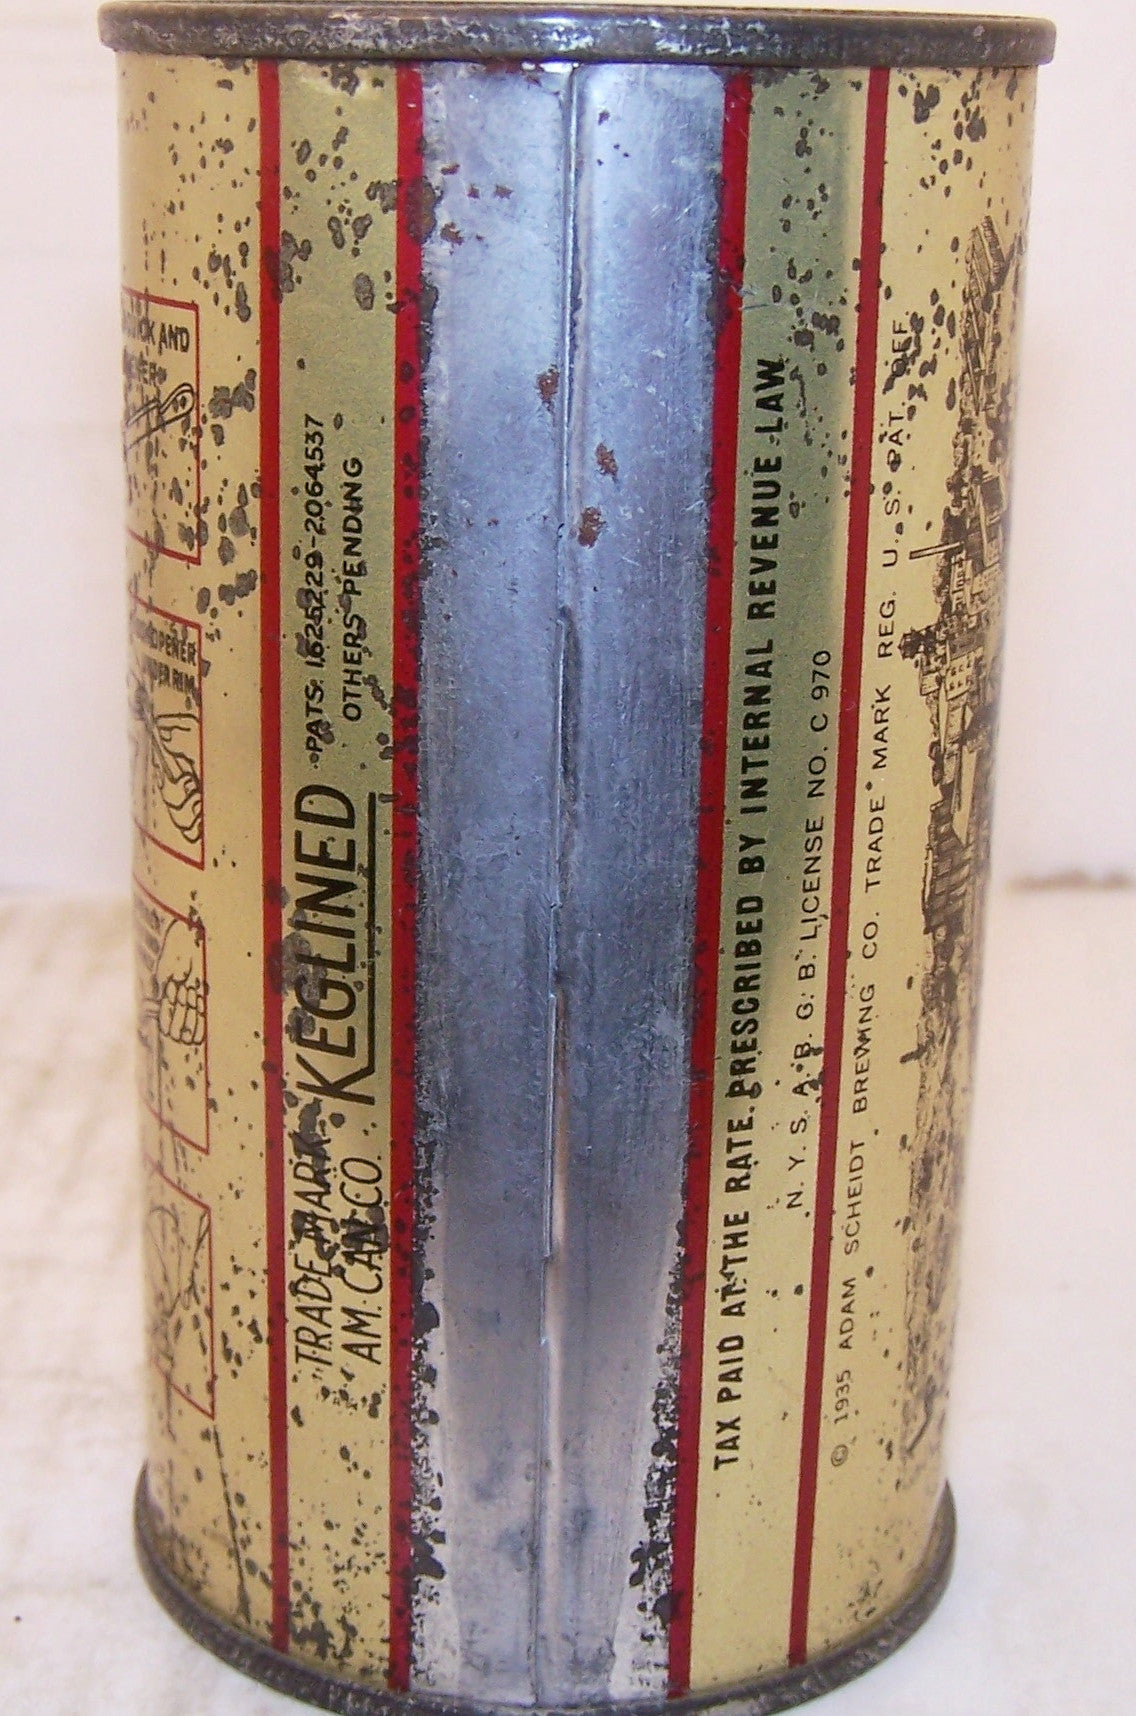 Scheidt's Rams Head Ale, USBC 118-33, Lilek #712, Grade 2+ Sold on 12/14/17